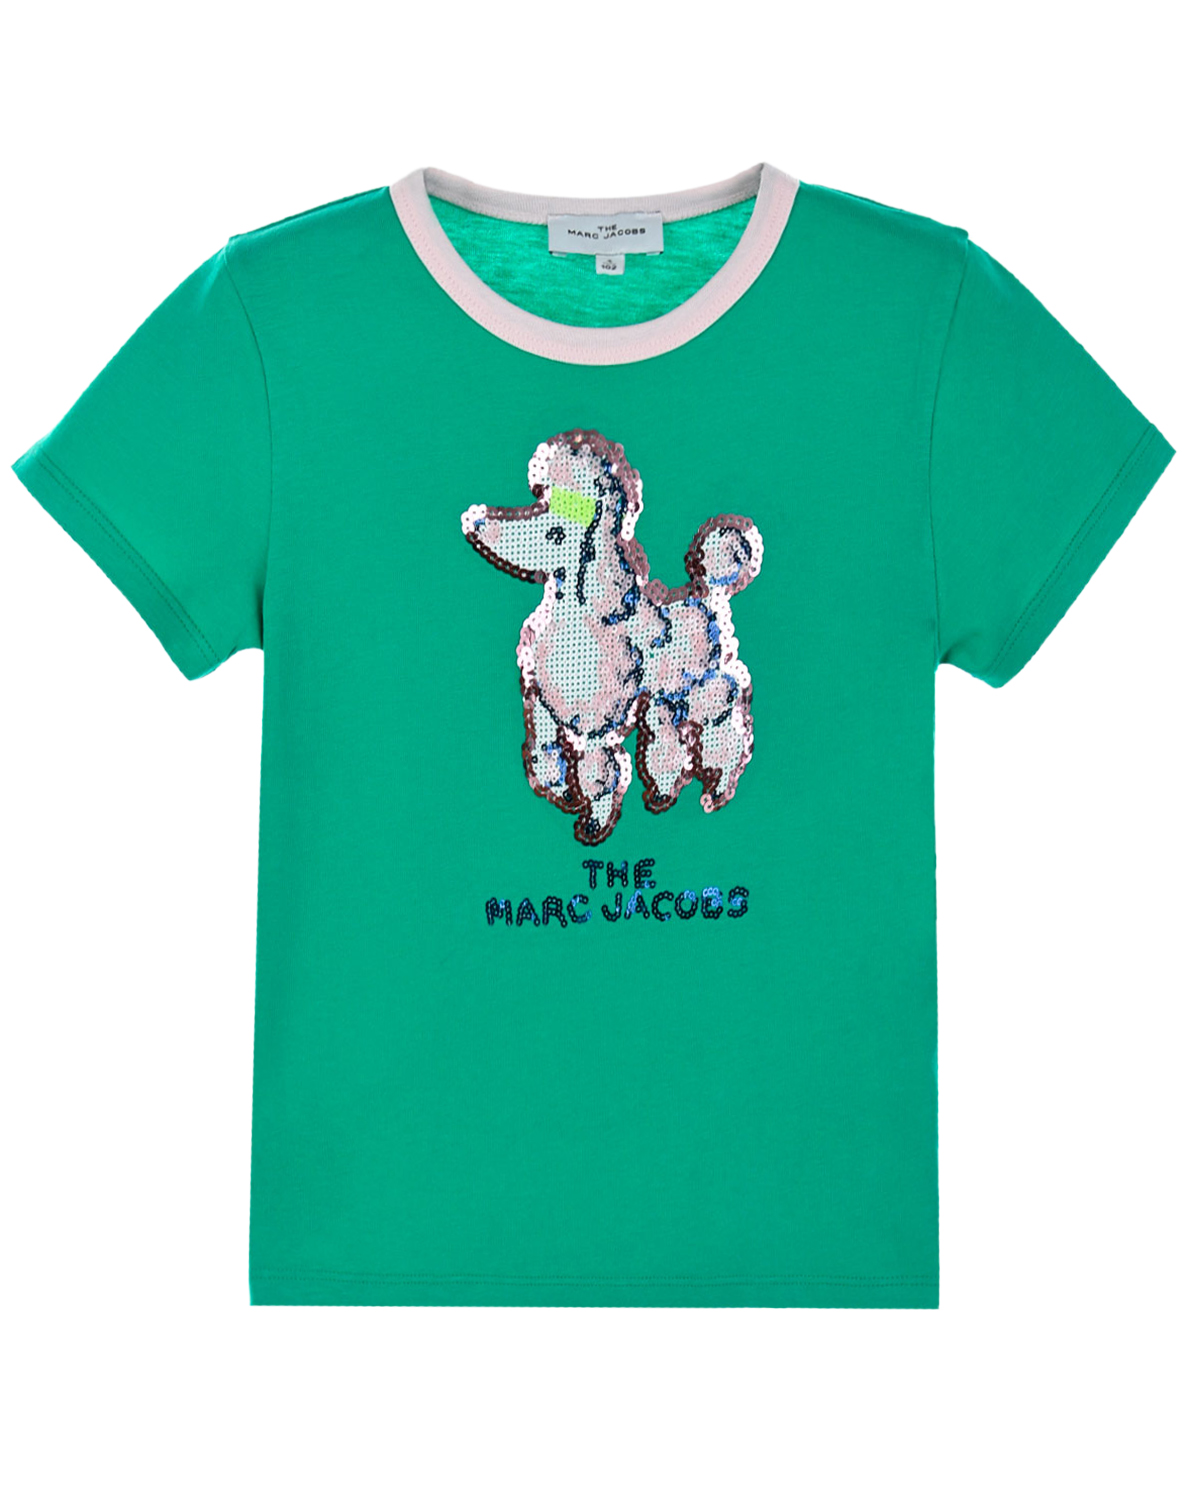 Купить Зеленая футболка с пуделем из пайеток Marc Jacobs (The) детская, Зеленый, 100%хлопок, 95%хлопок+5%эластан